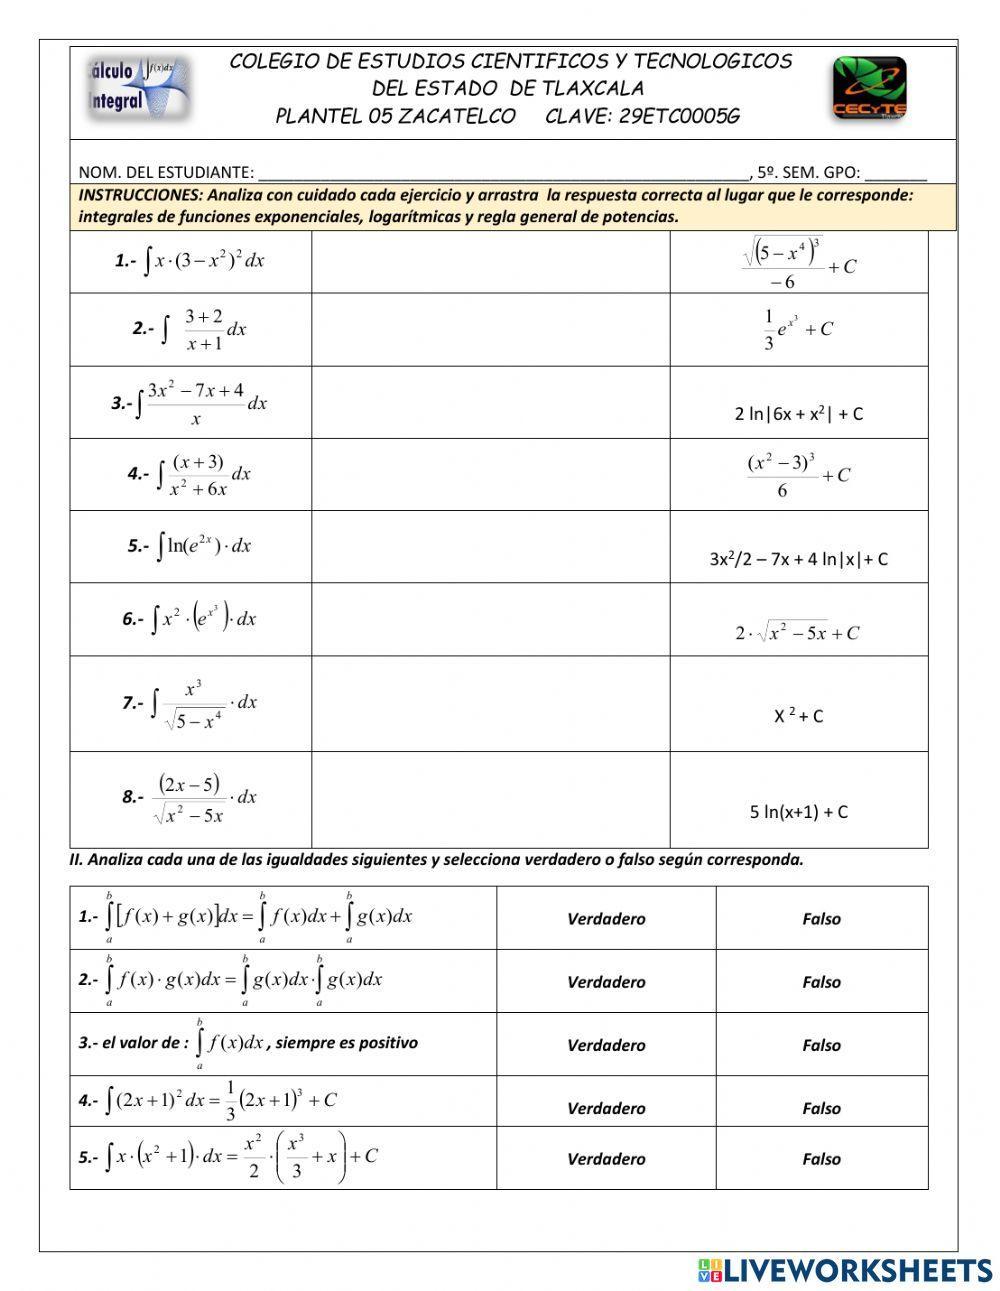 Integrales de funciones logarítmicas y exponenciales